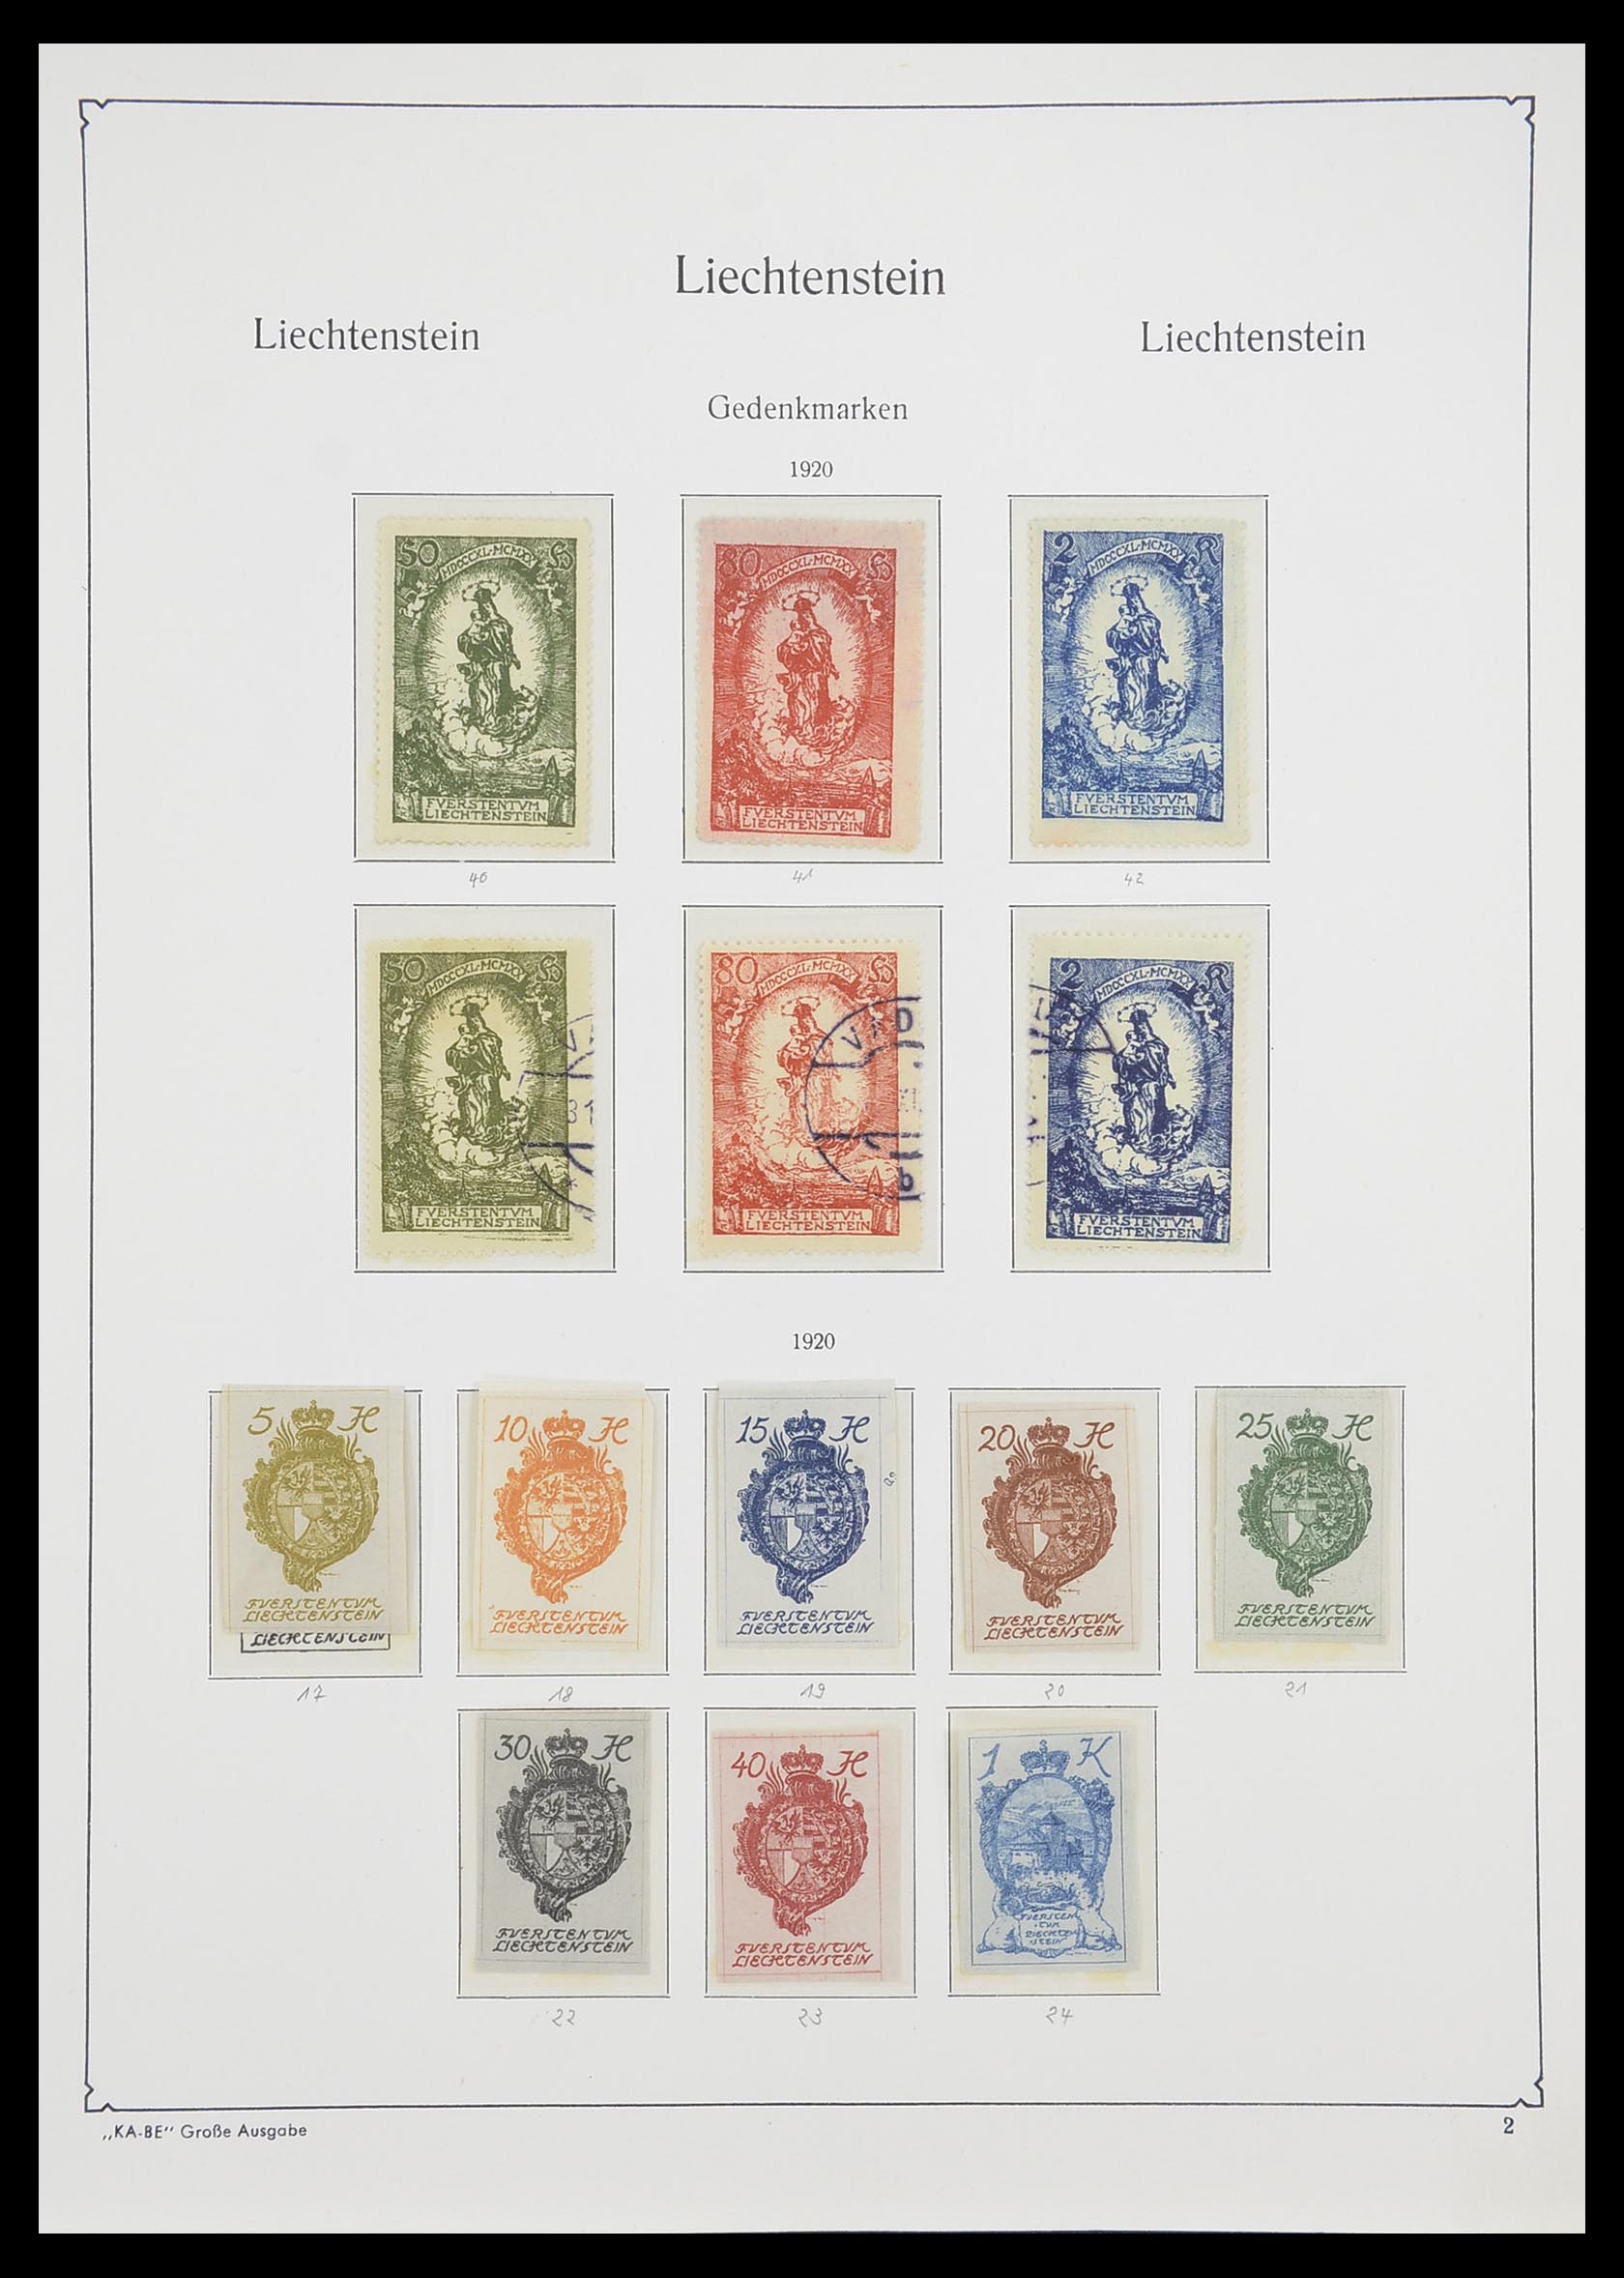 33493 004 - Stamp collection 33493 Liechtenstein 1912-2008.